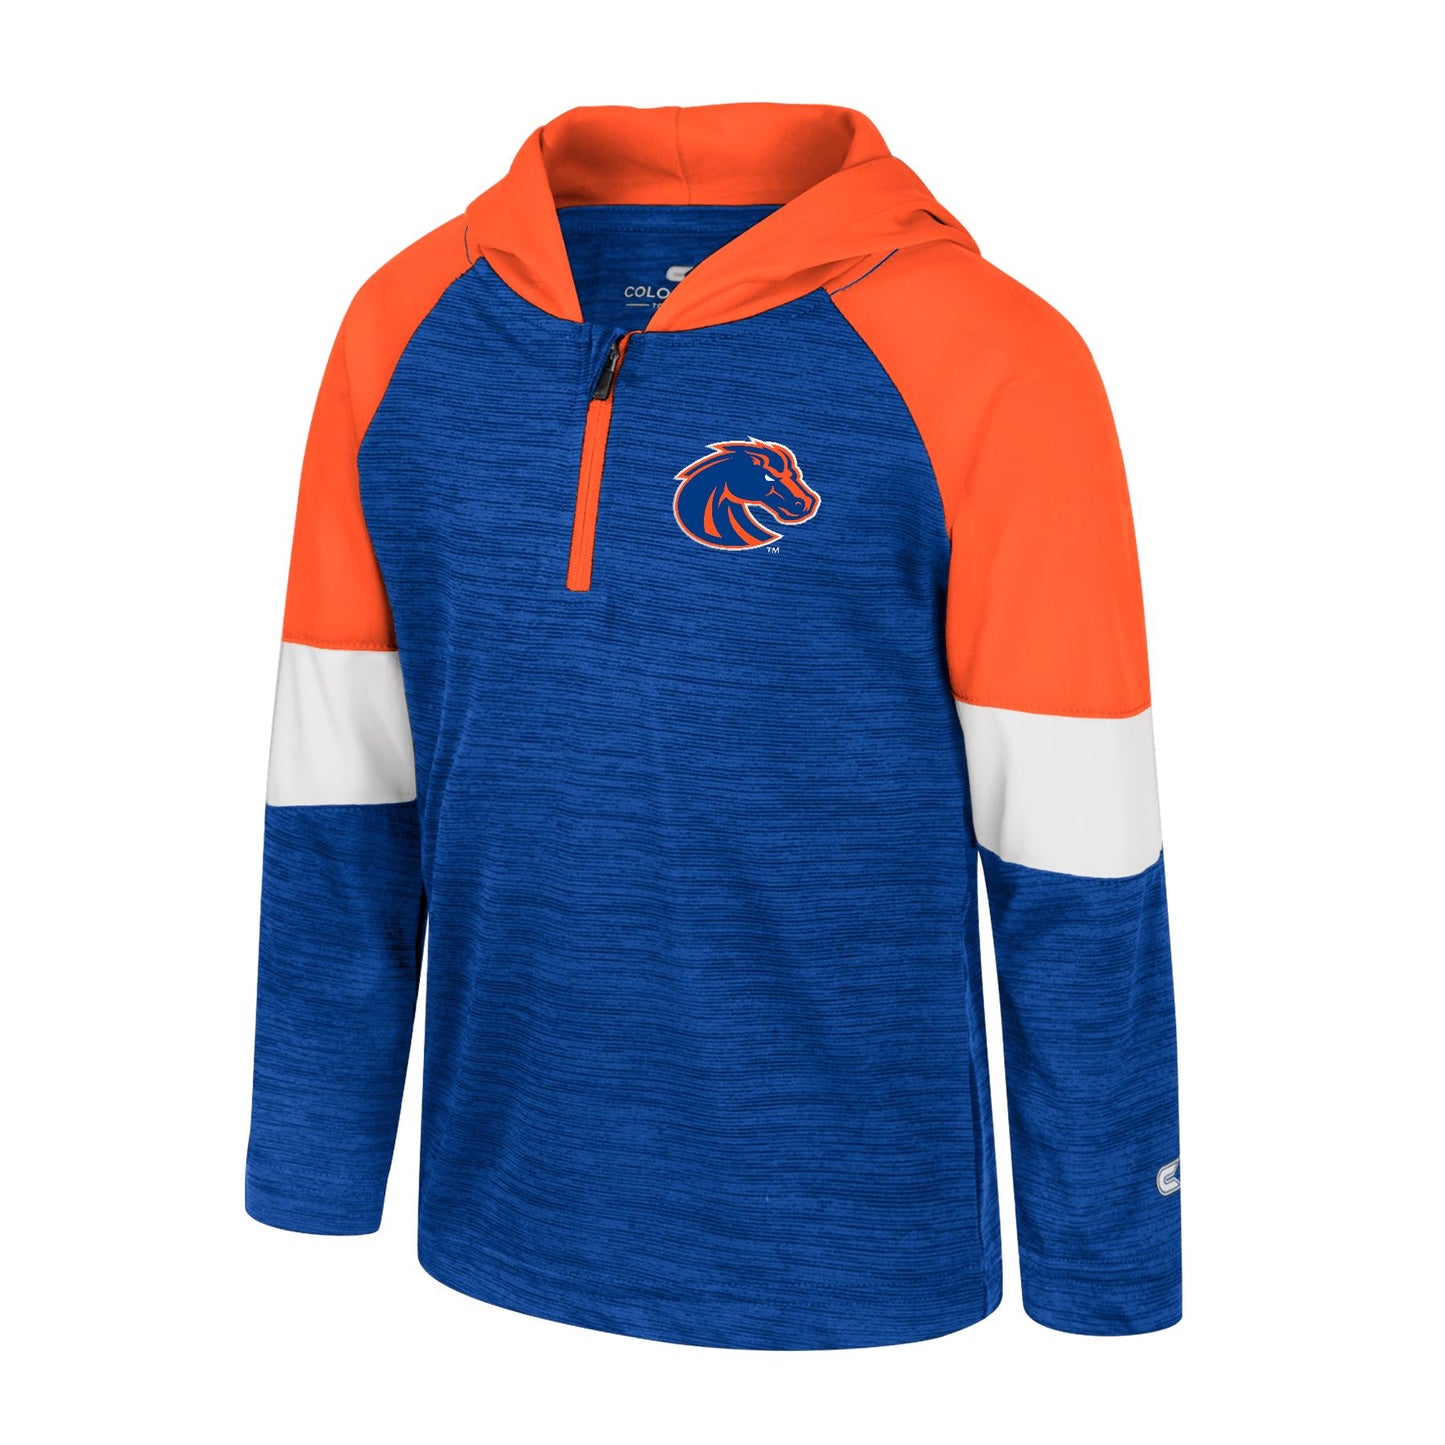 Boise State Broncos Colosseum Toddler 1/4 Zip Jacket (Blue/Orange)